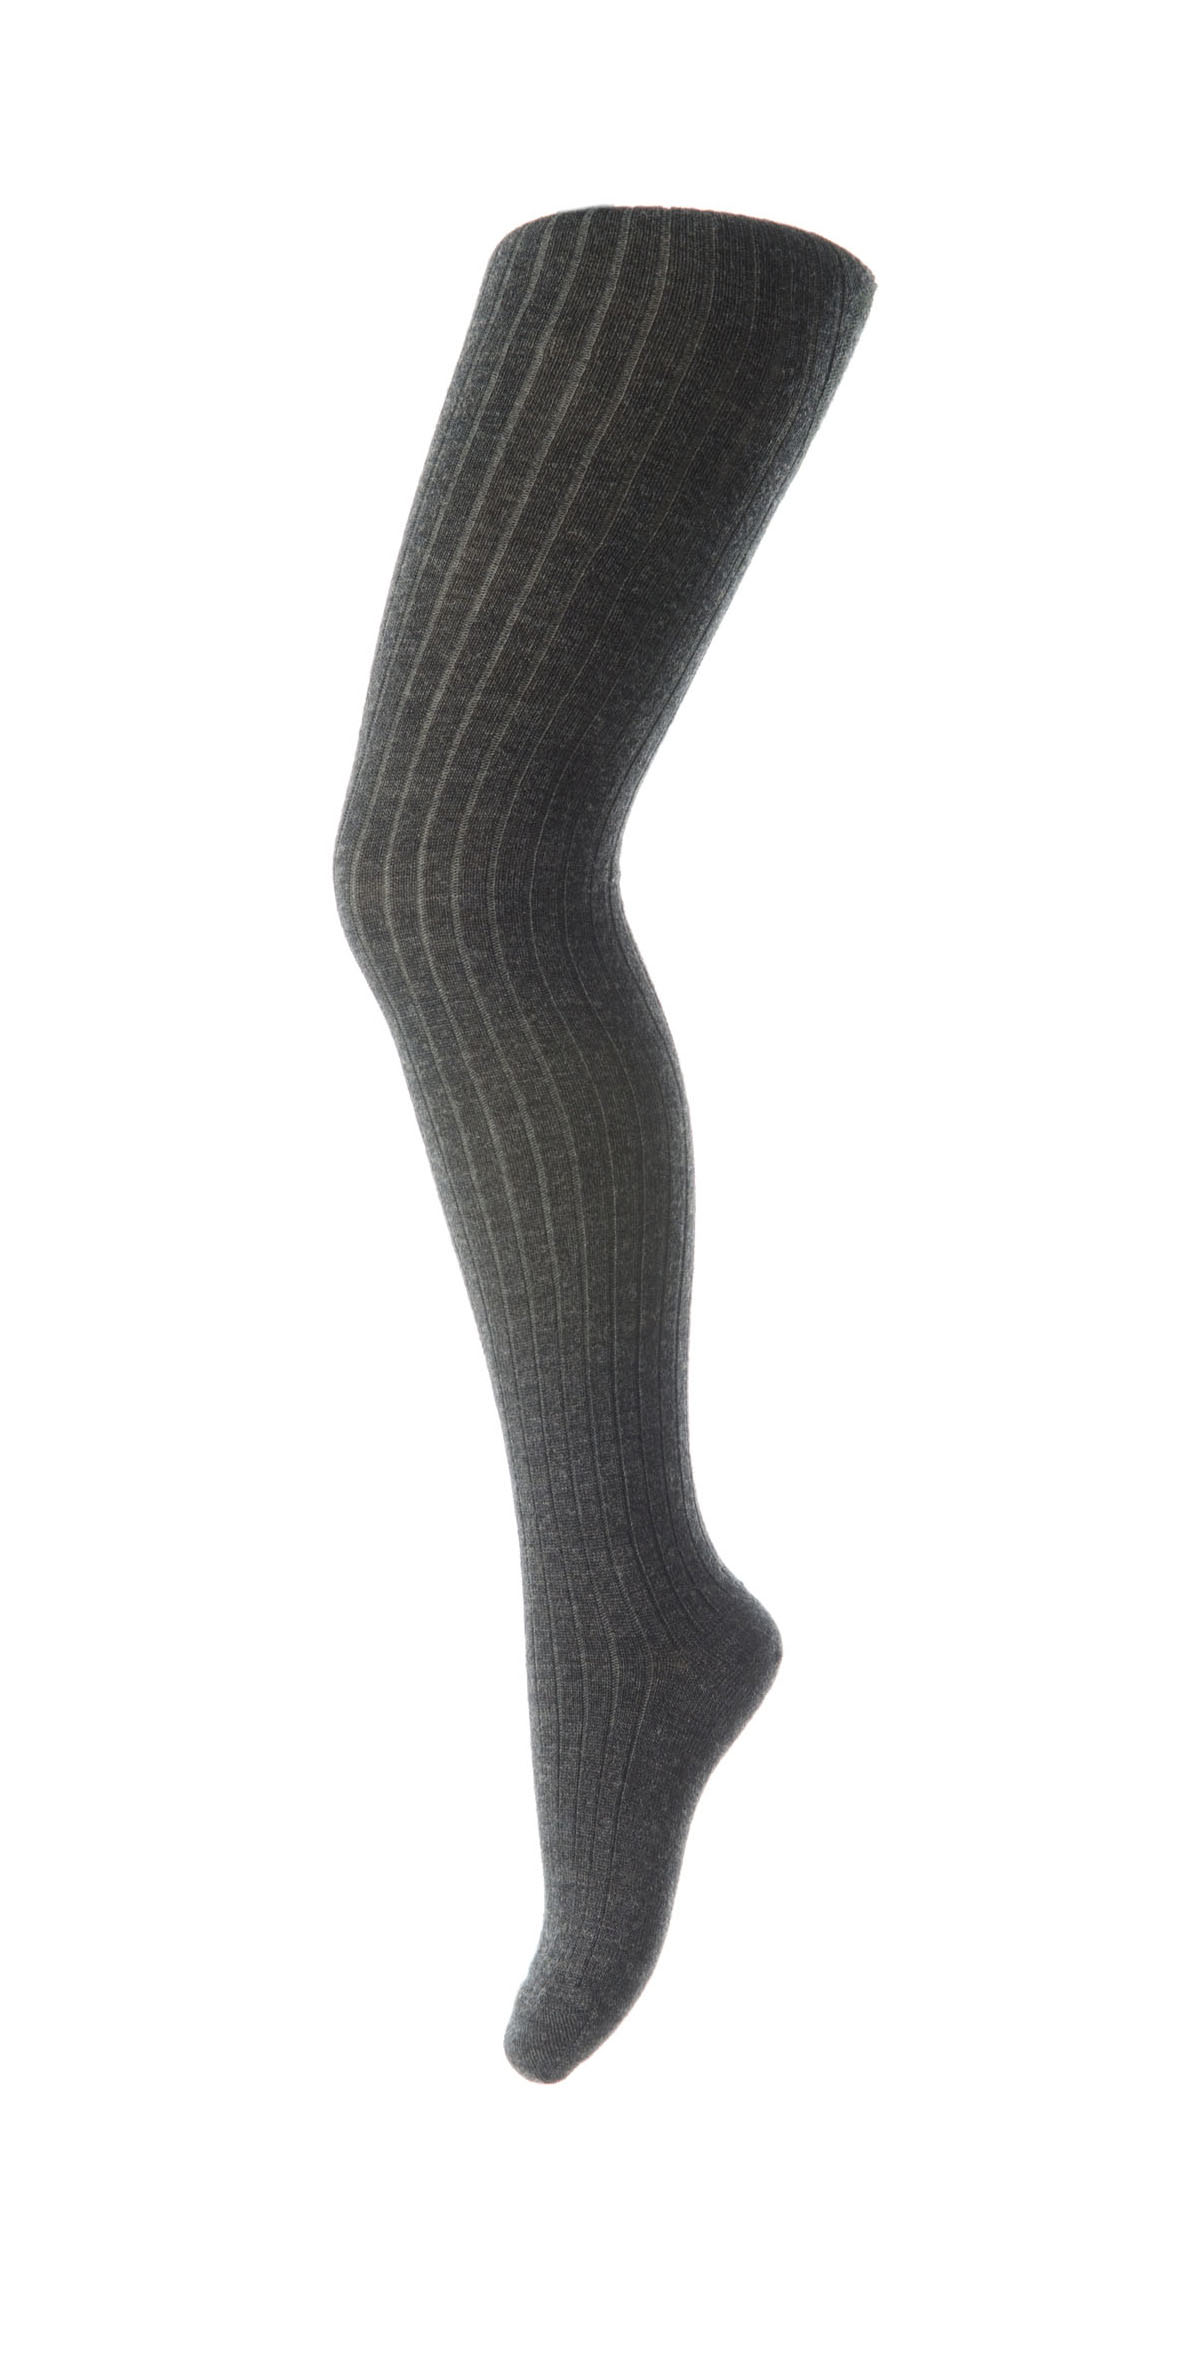  Uld Strømpebuks, Dark Grey Marled, 140 cm